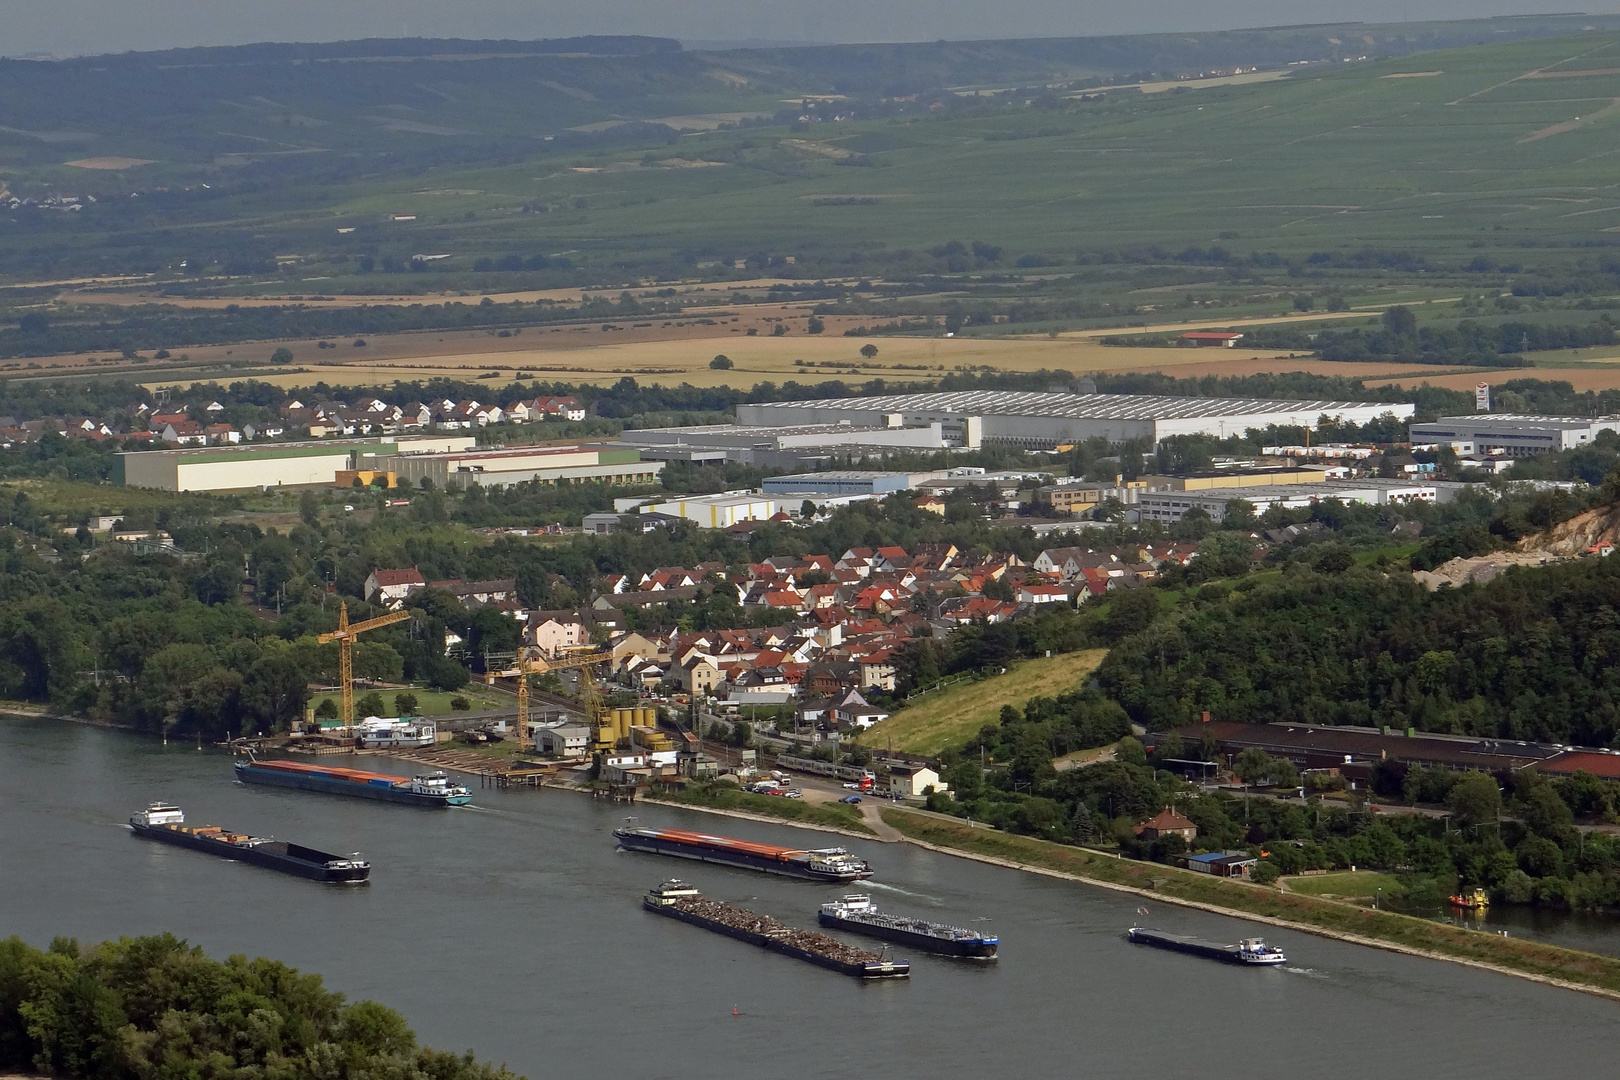 Ingelheim am Rhein